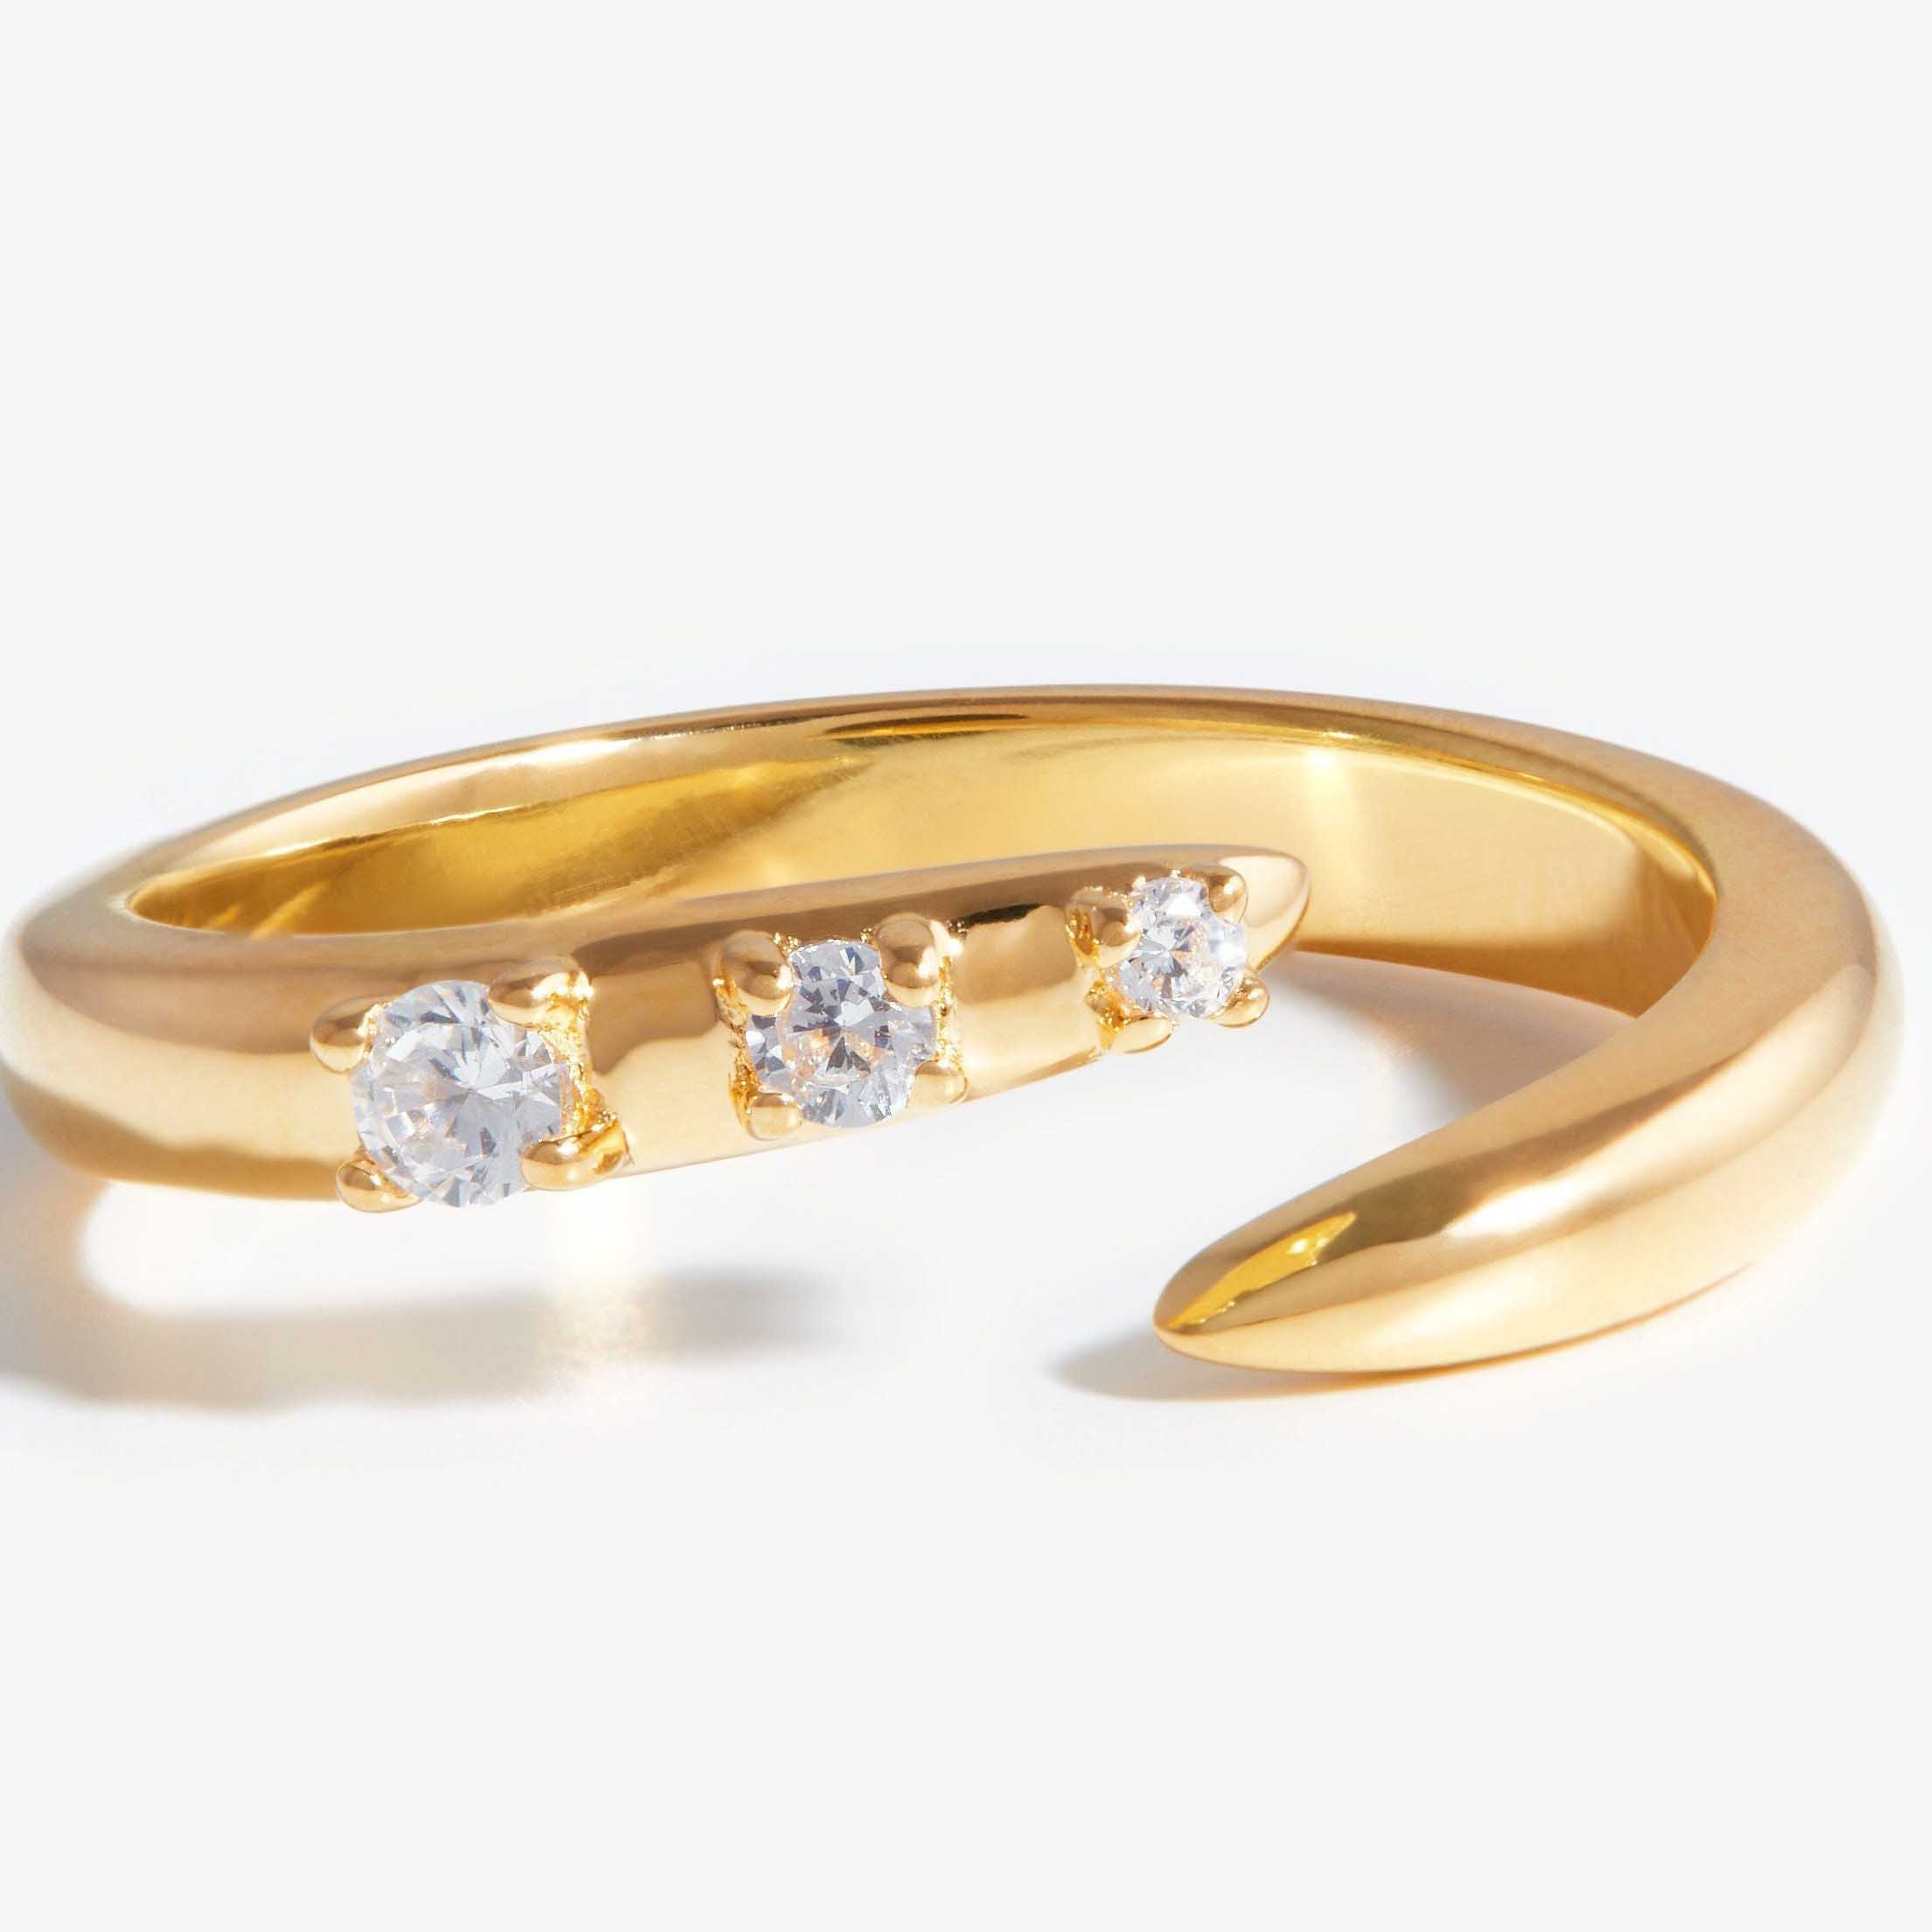 Anello aperto personalizzato con zirconi cubici all'ingrosso in argento ma colorato in oro.